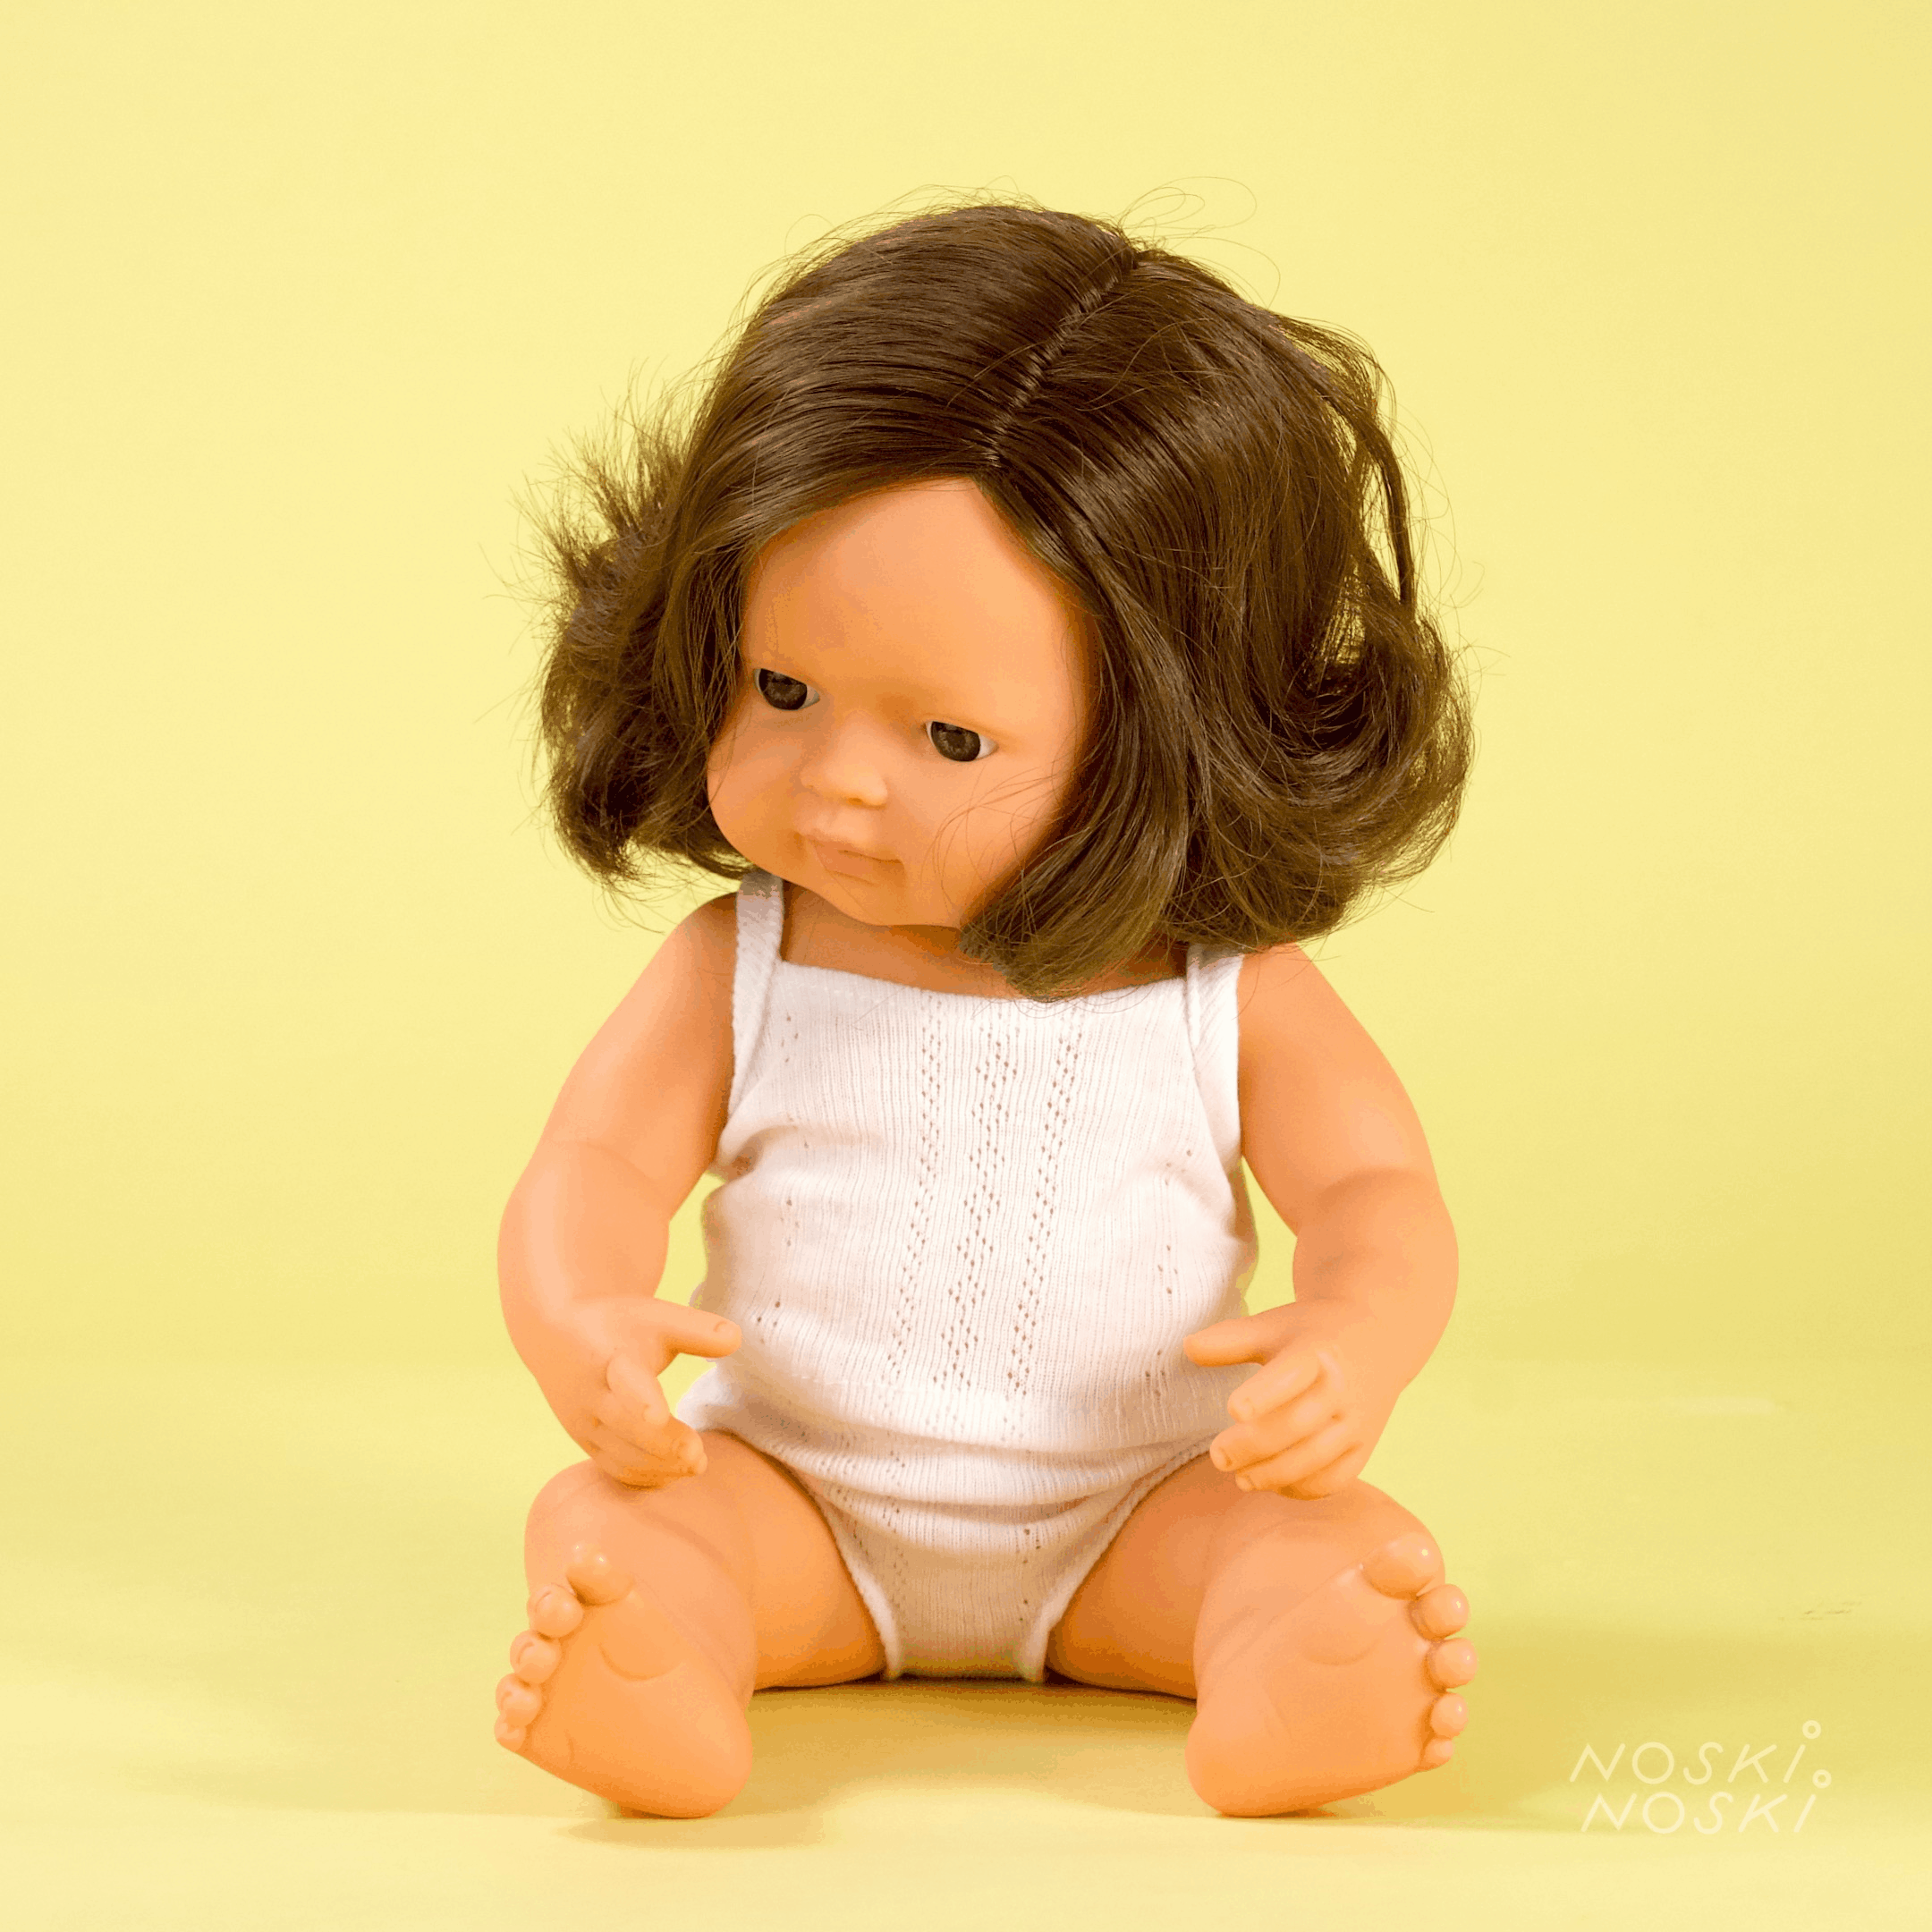 Miniland: lalka dziewczynka szatynka Europejka 38 cm - Noski Noski